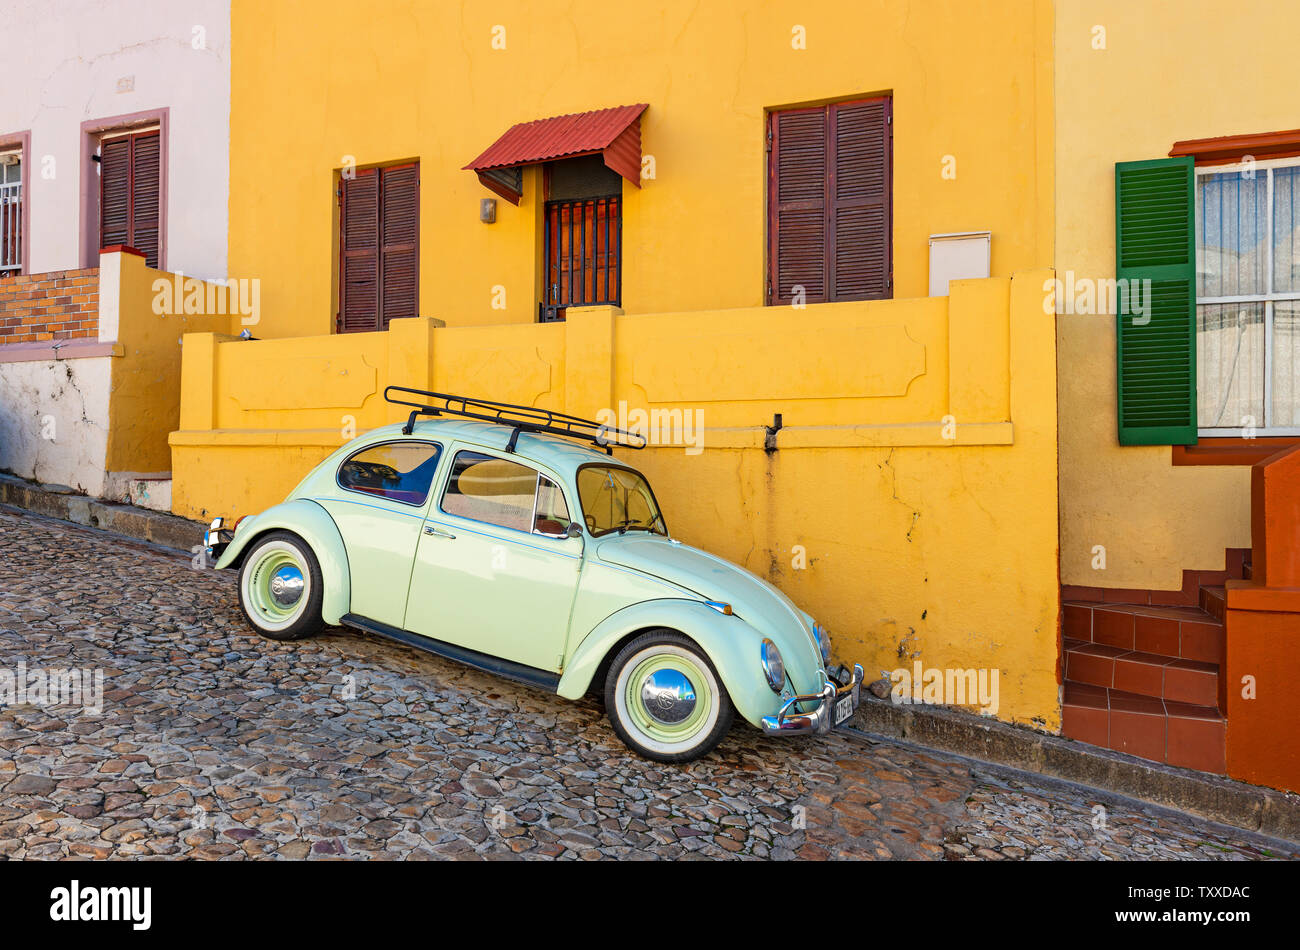 Un antiguo coche de época renovado o antiguo temporizador en una calle colorida con fachada naranja del distrito de Bo Kaap en Ciudad del Cabo, Sudáfrica. Foto de stock